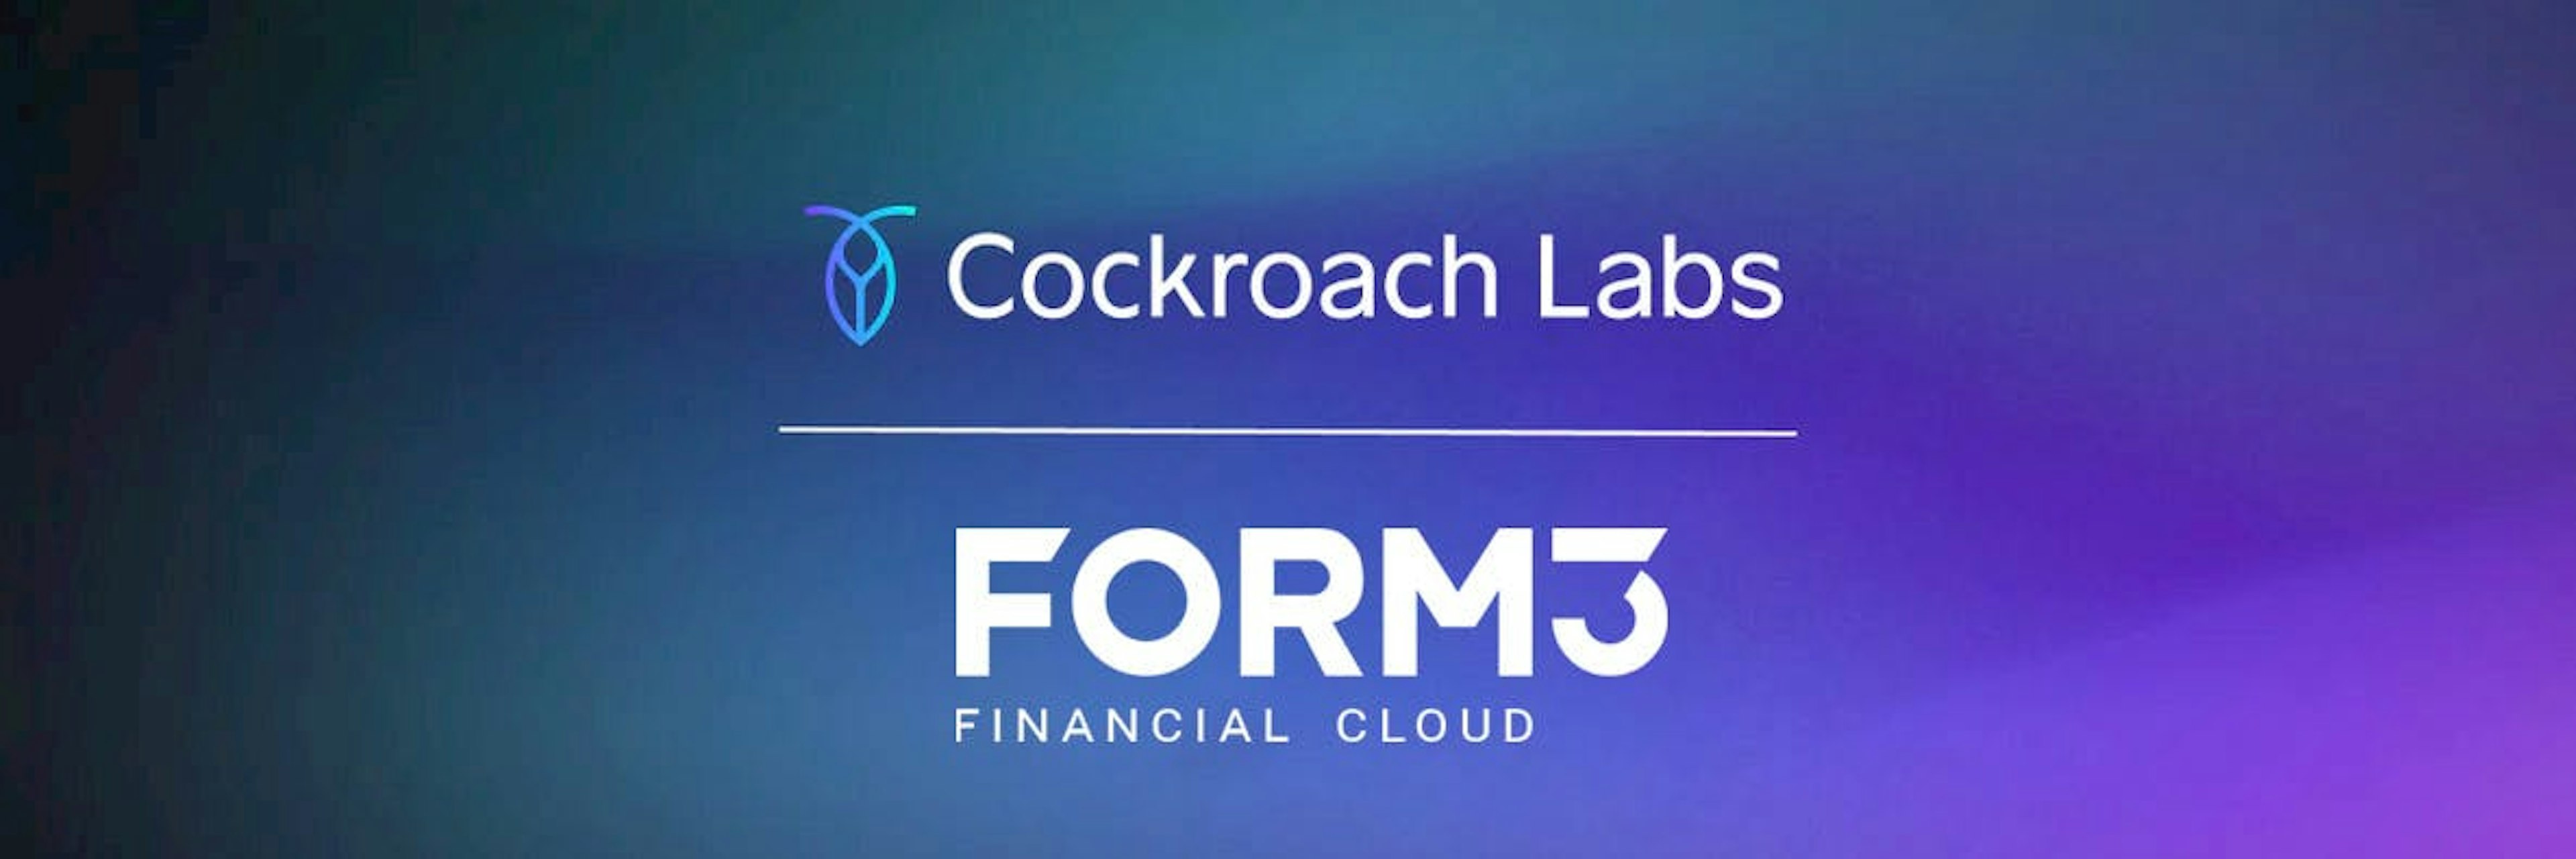 cockroachdb-form3